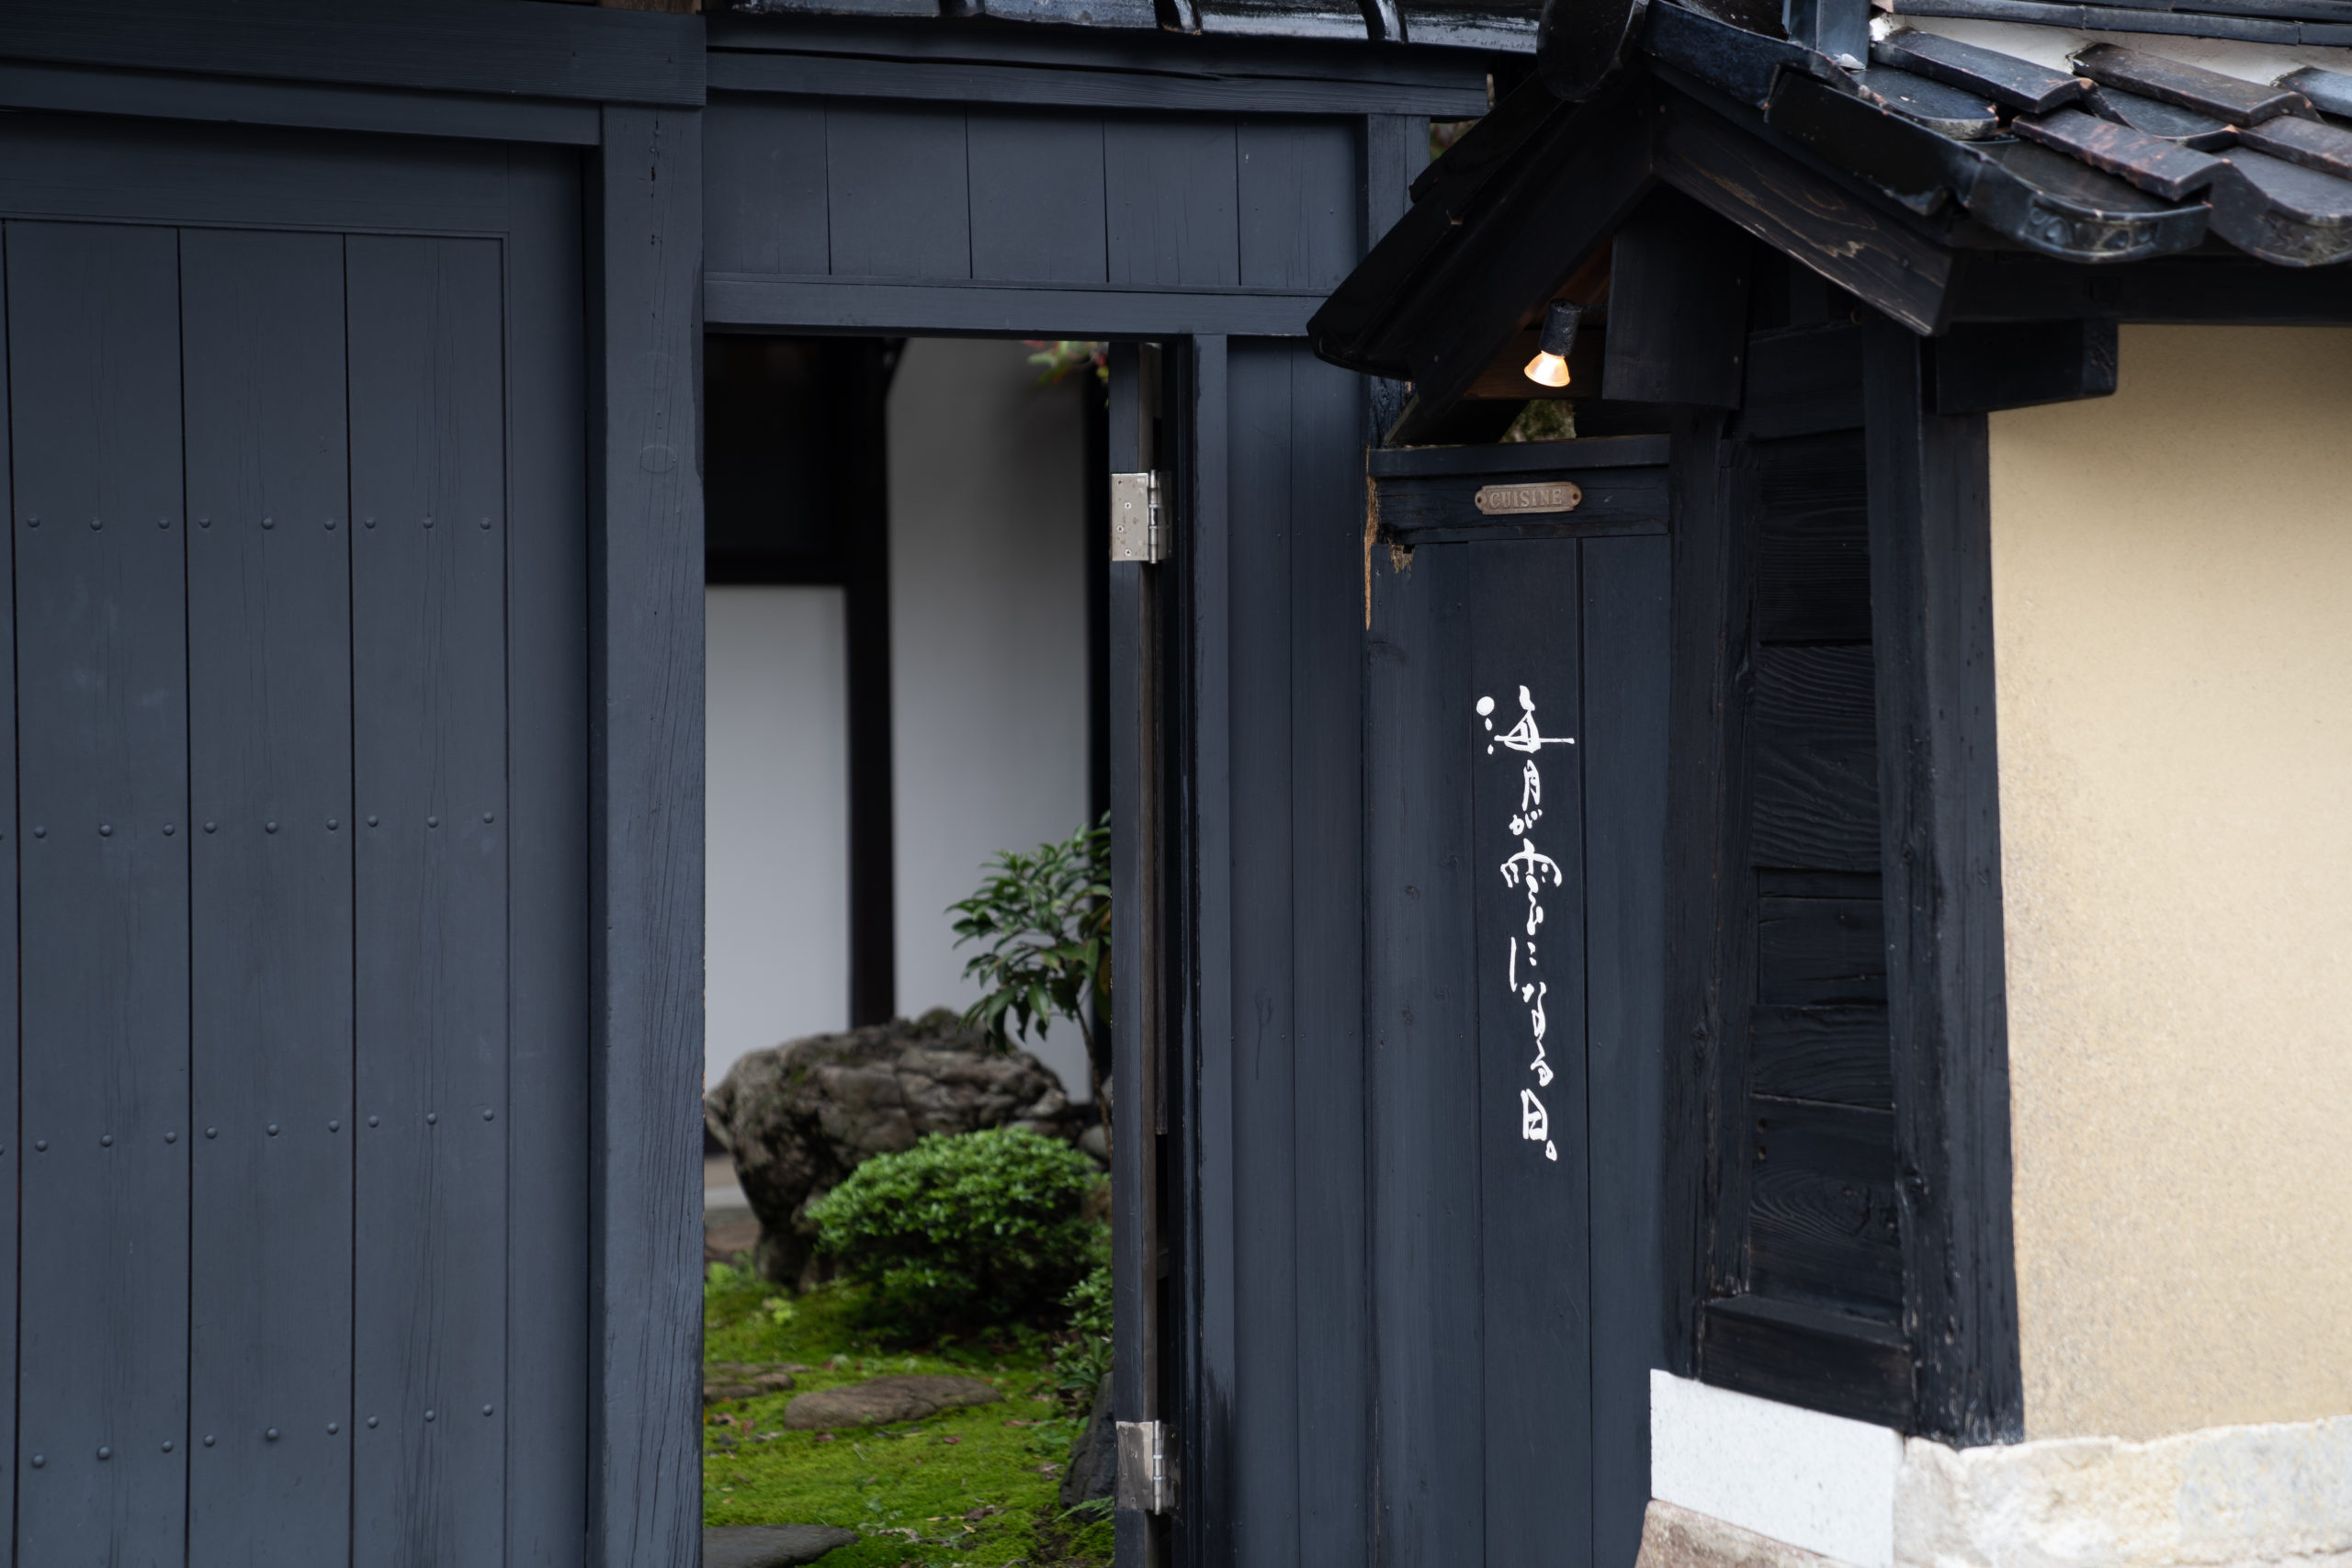 「海月が雲になる日」金沢長町武家屋敷でタイ料理が味わえるお店の入り方